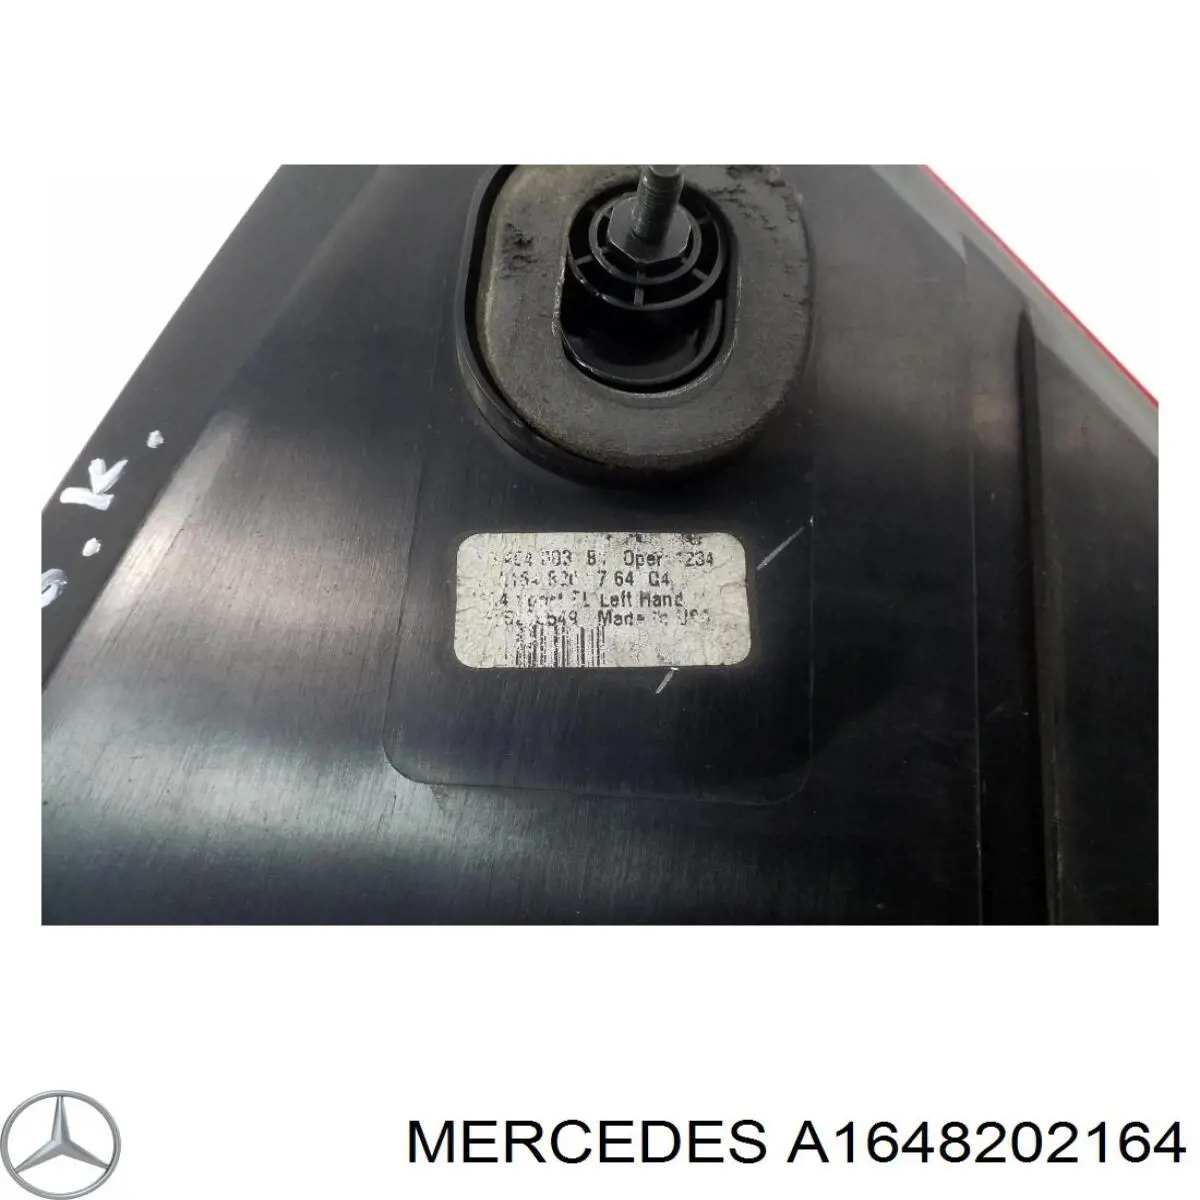 A1648202164 Mercedes piloto posterior izquierdo